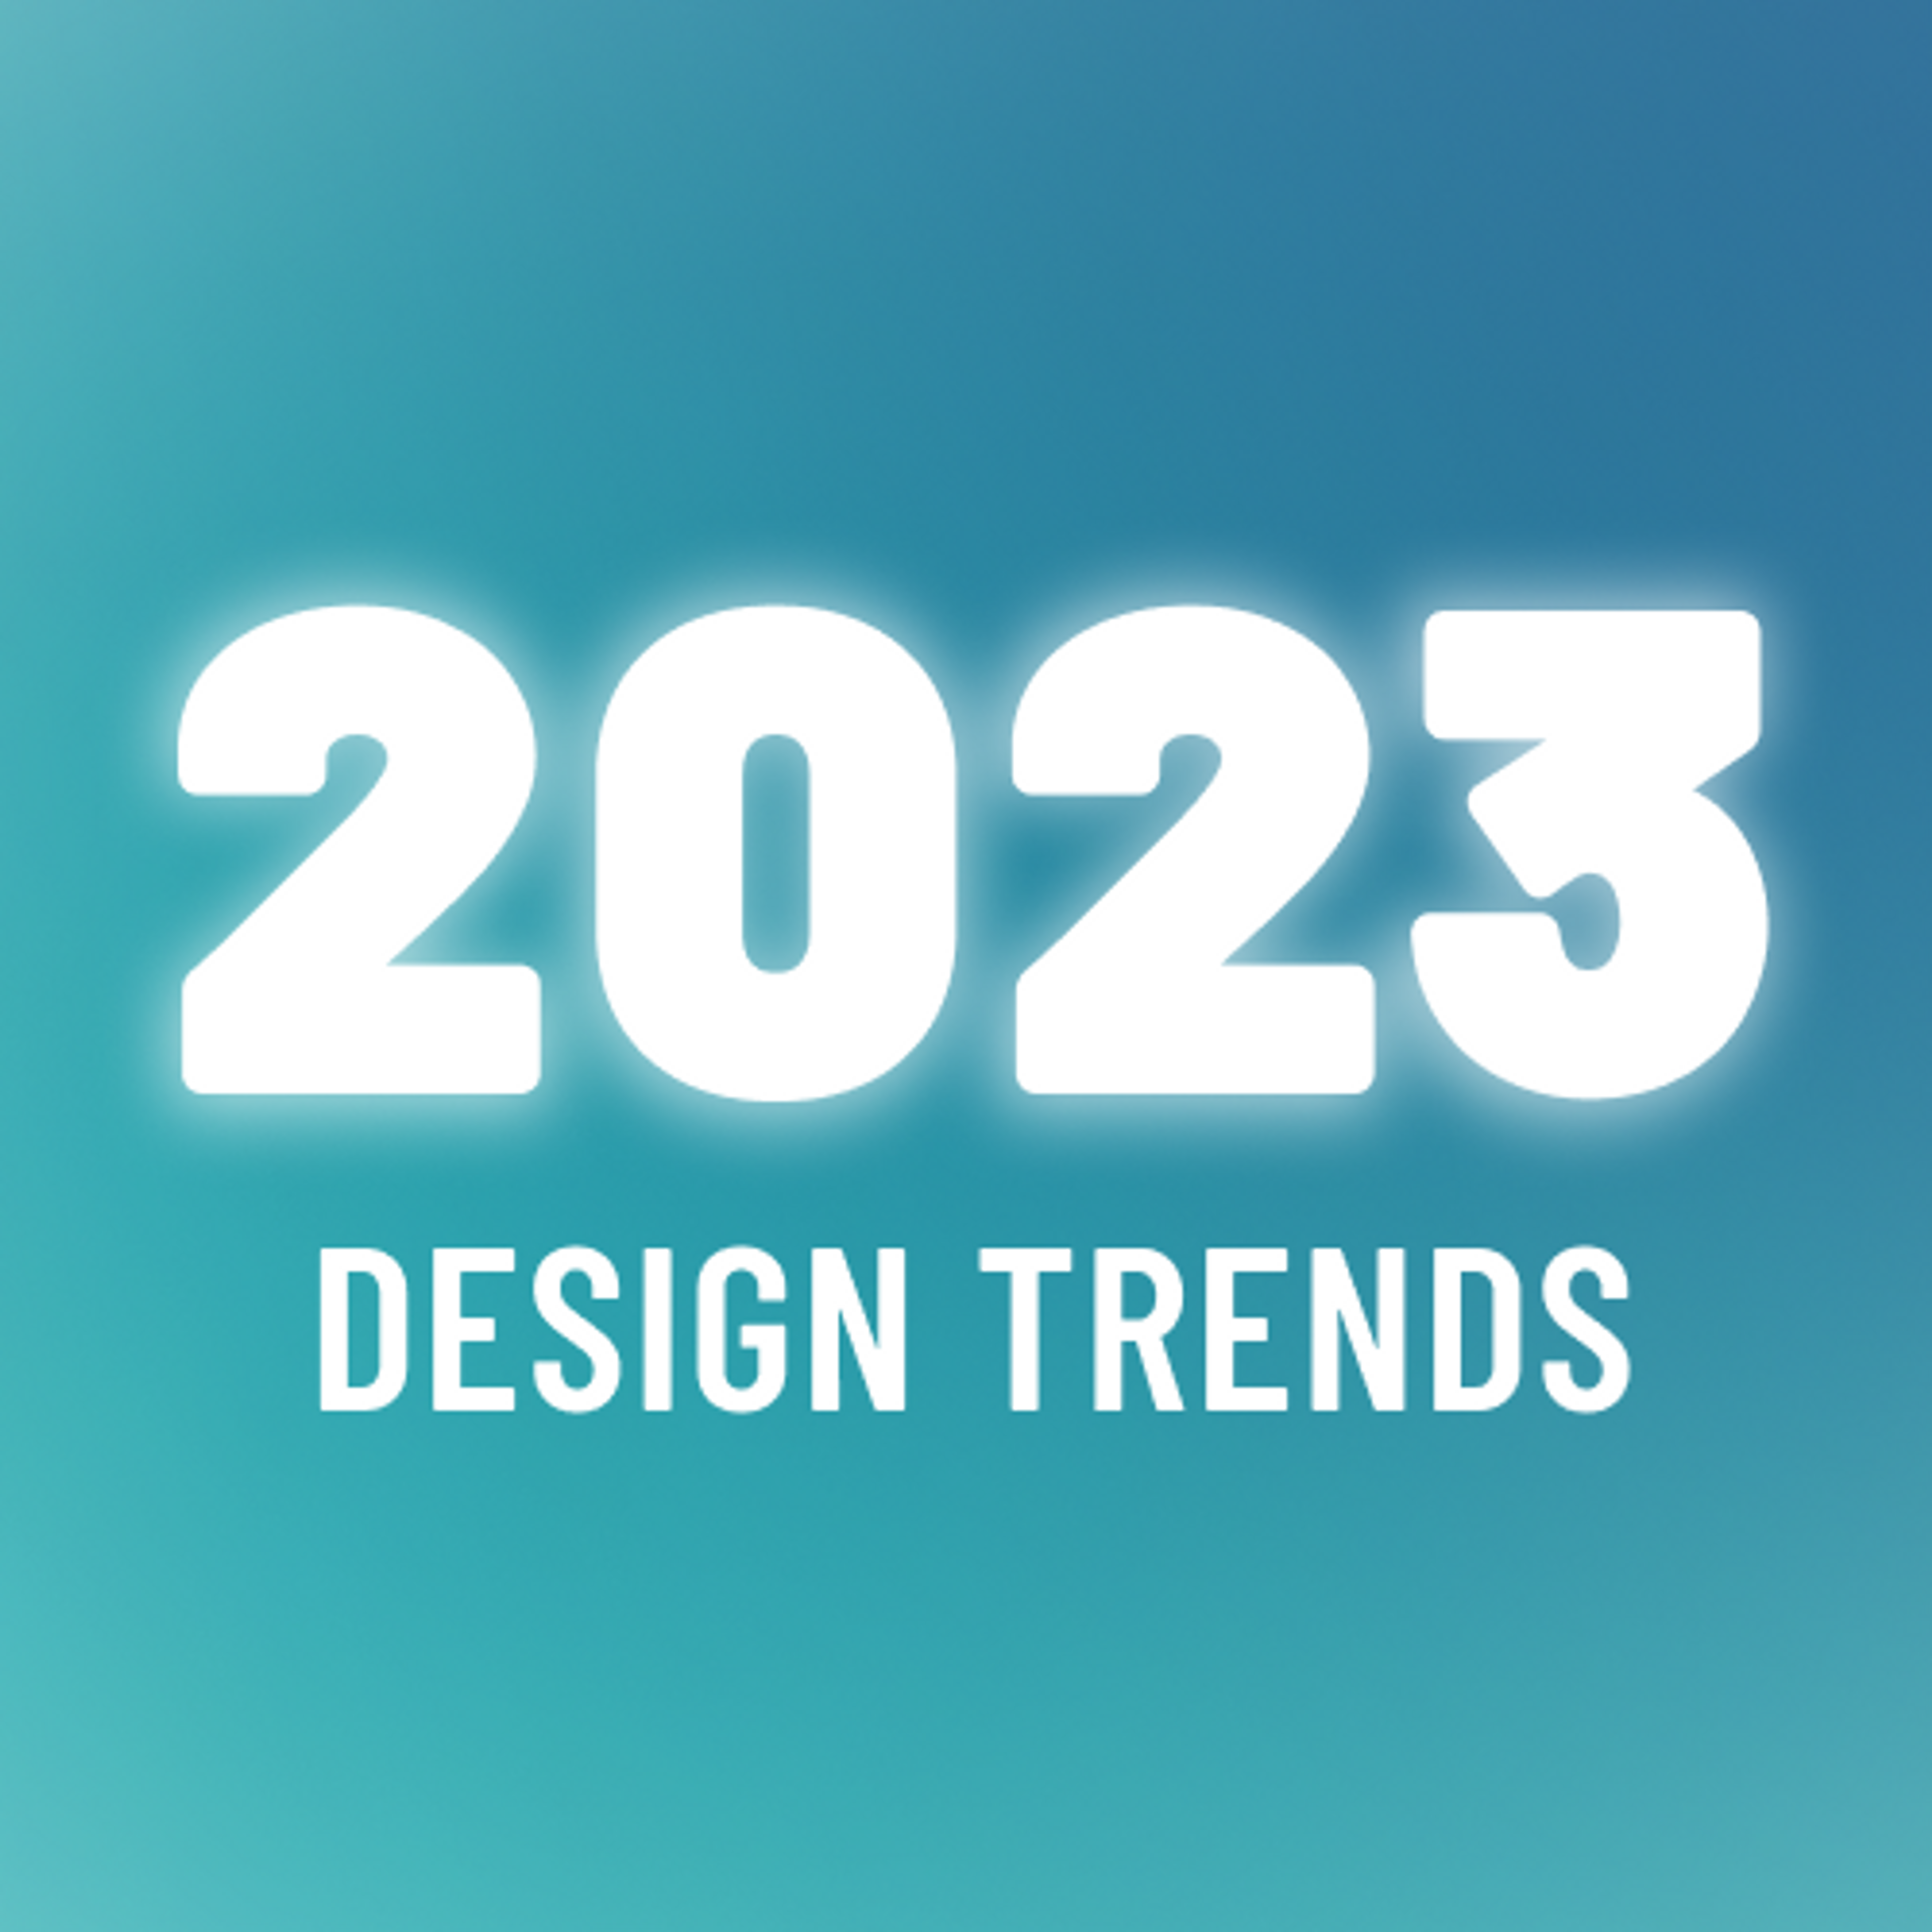 Diese 10 UX & UI Design Trends sollten Sie für 2023 im Blick haben